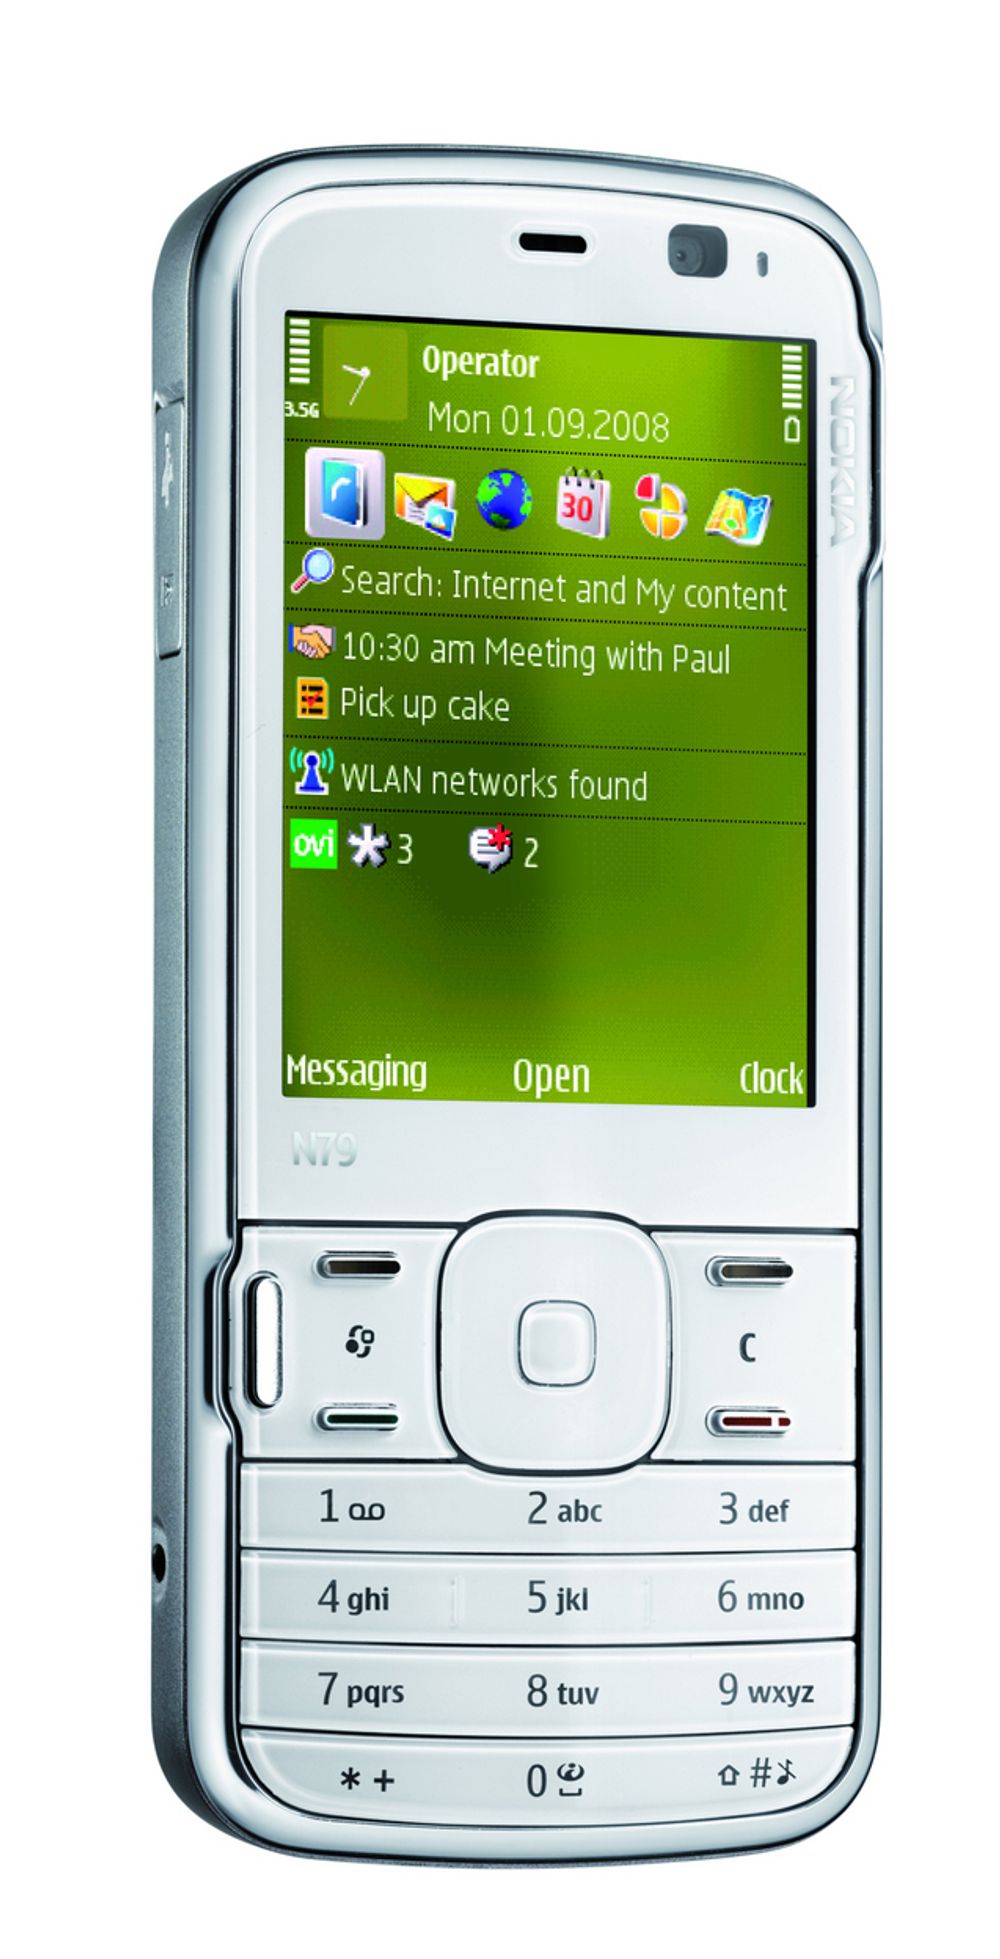 Nokia N79.